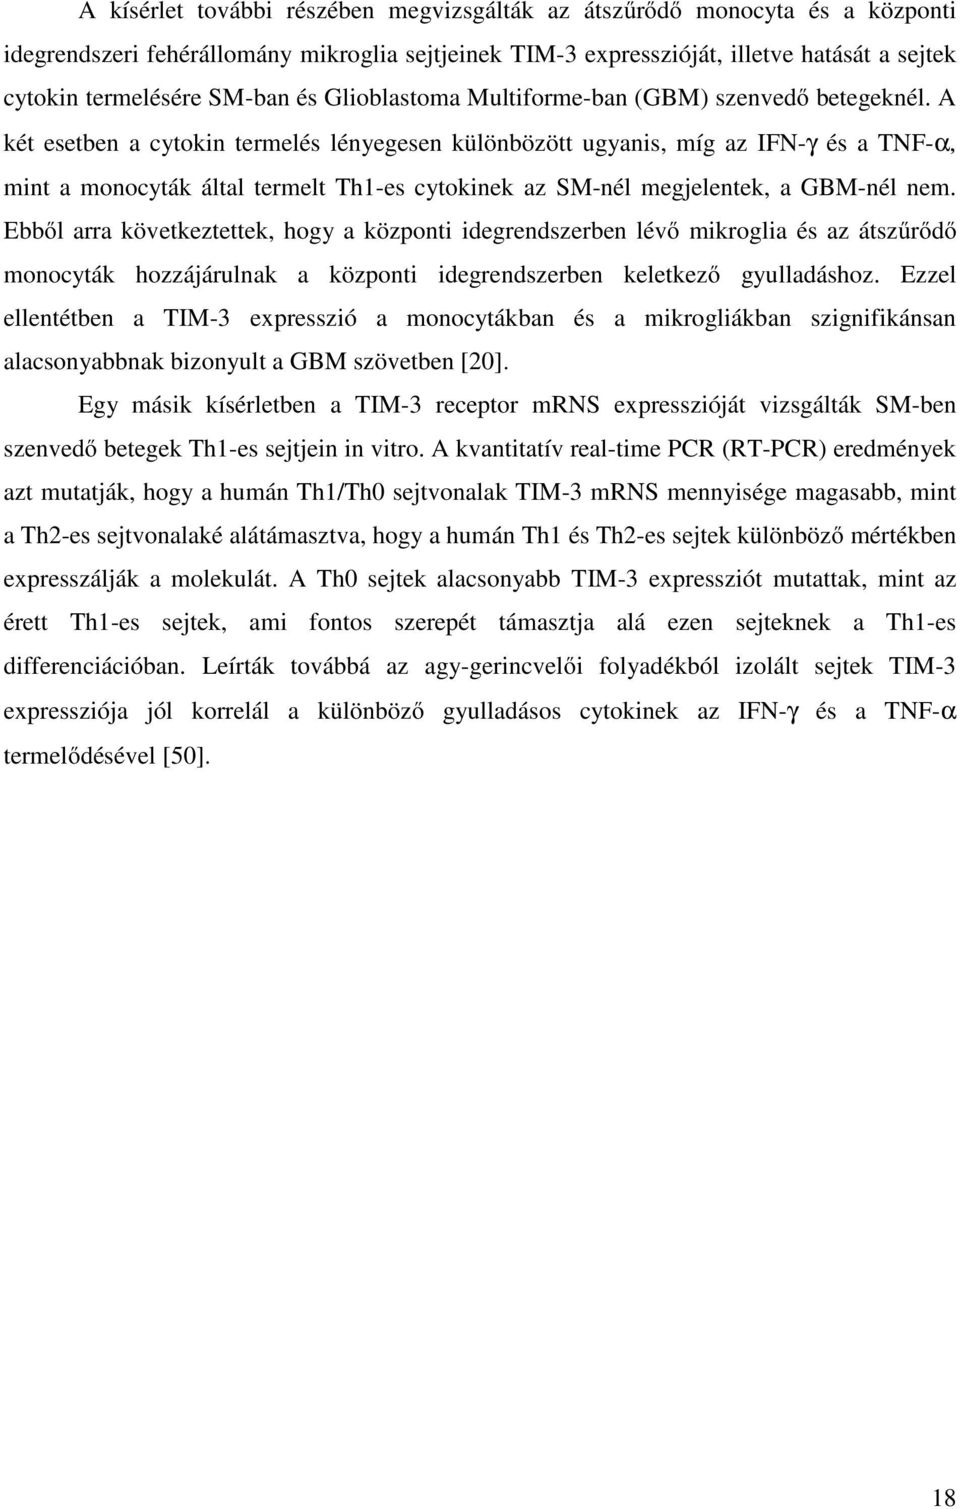 A két esetben a cytokin termelés lényegesen különbözött ugyanis, míg az IFN-γ és a TNF-α, mint a monocyták által termelt Th1-es cytokinek az SM-nél megjelentek, a GBM-nél nem.